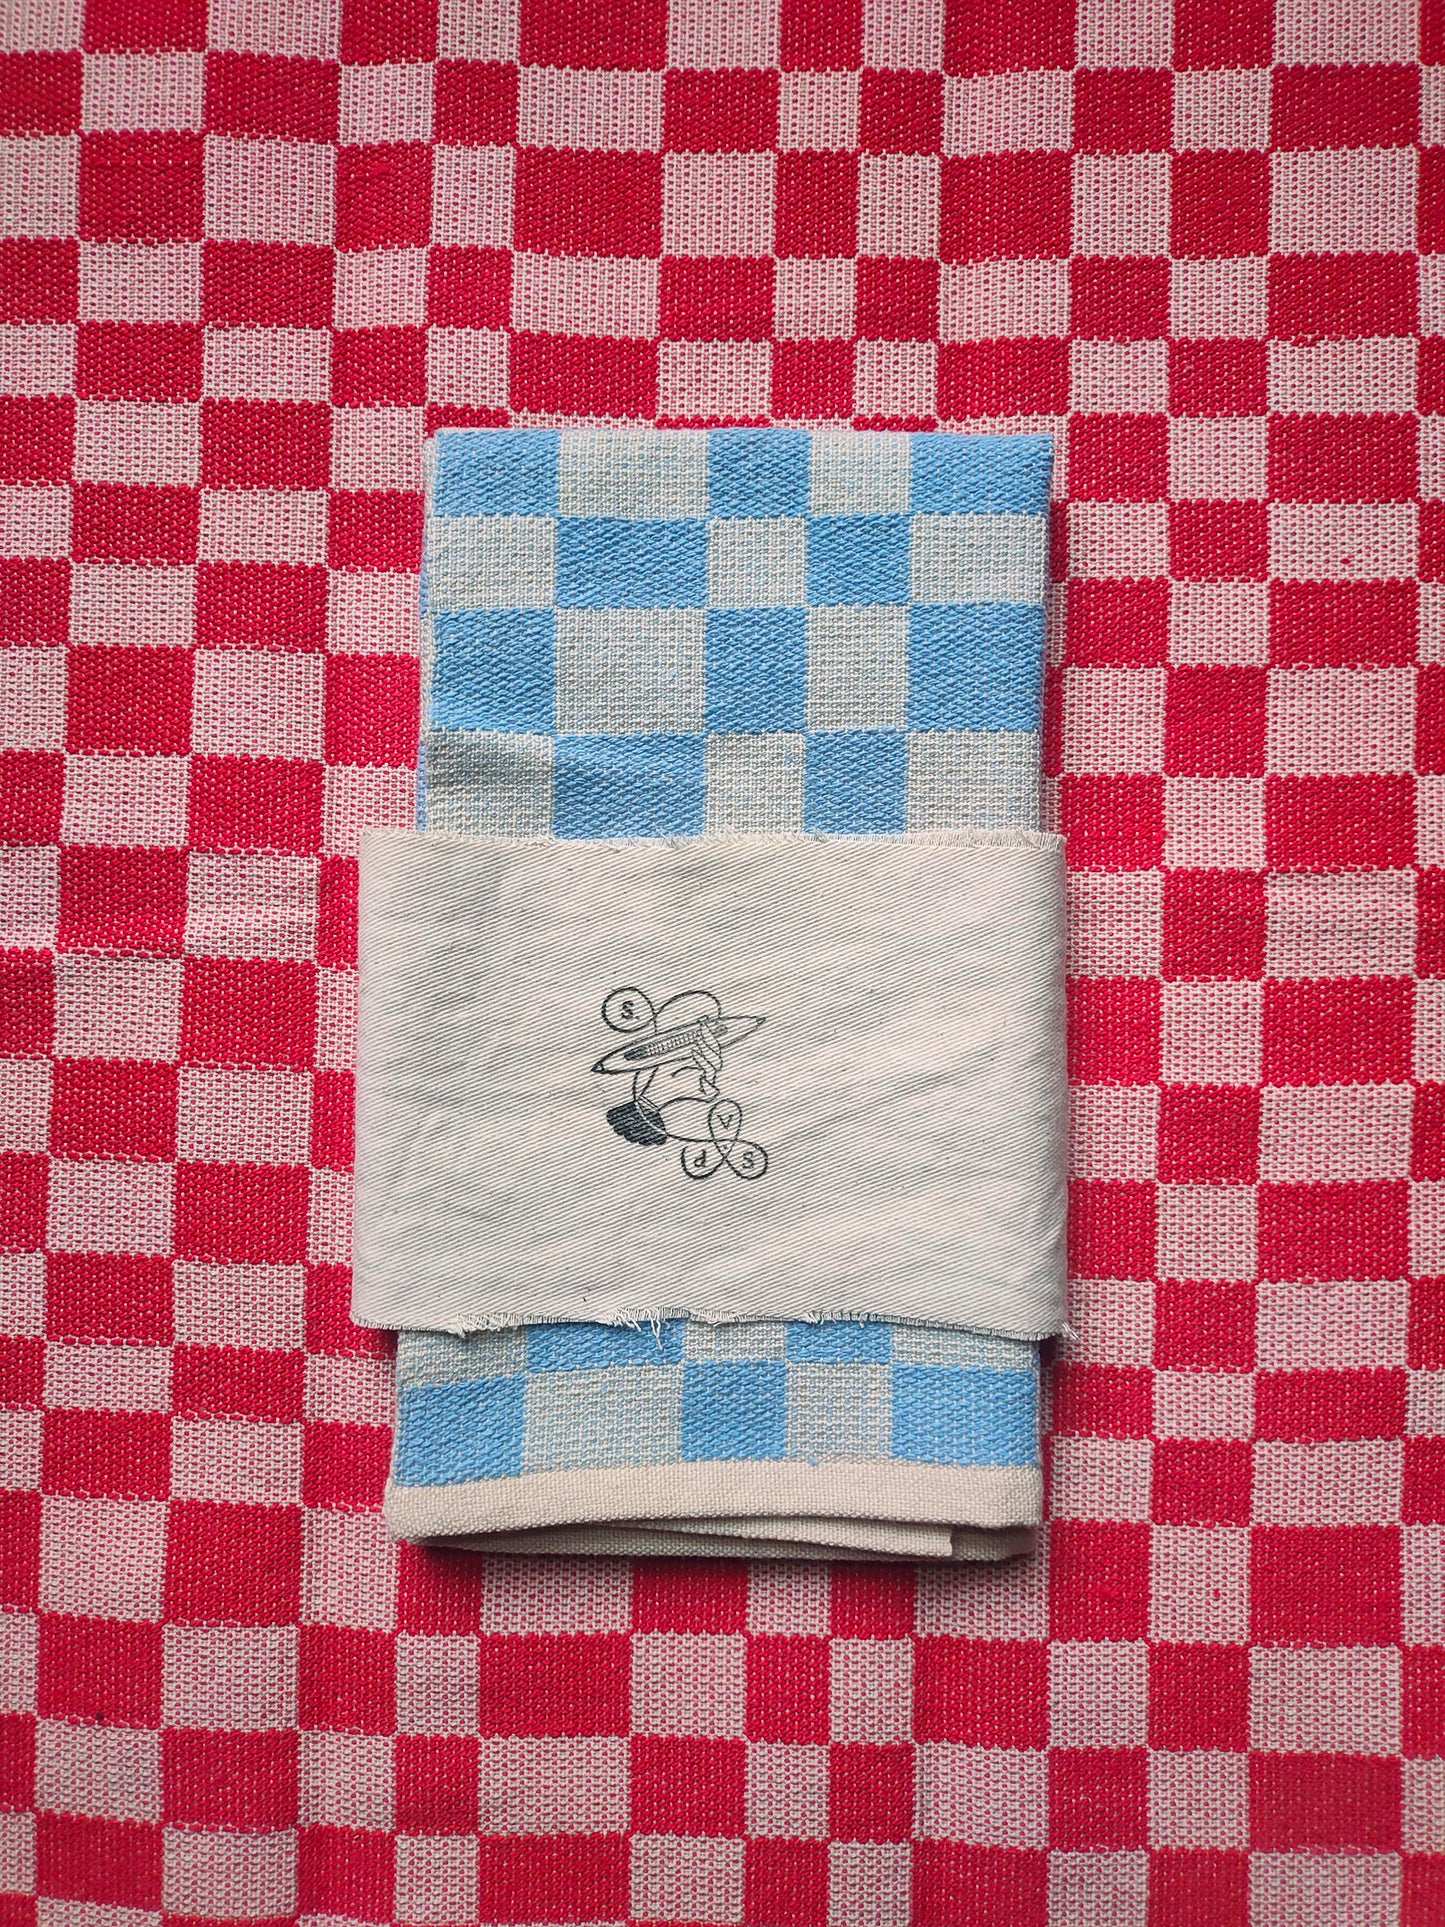 Handwoven tea towel pair